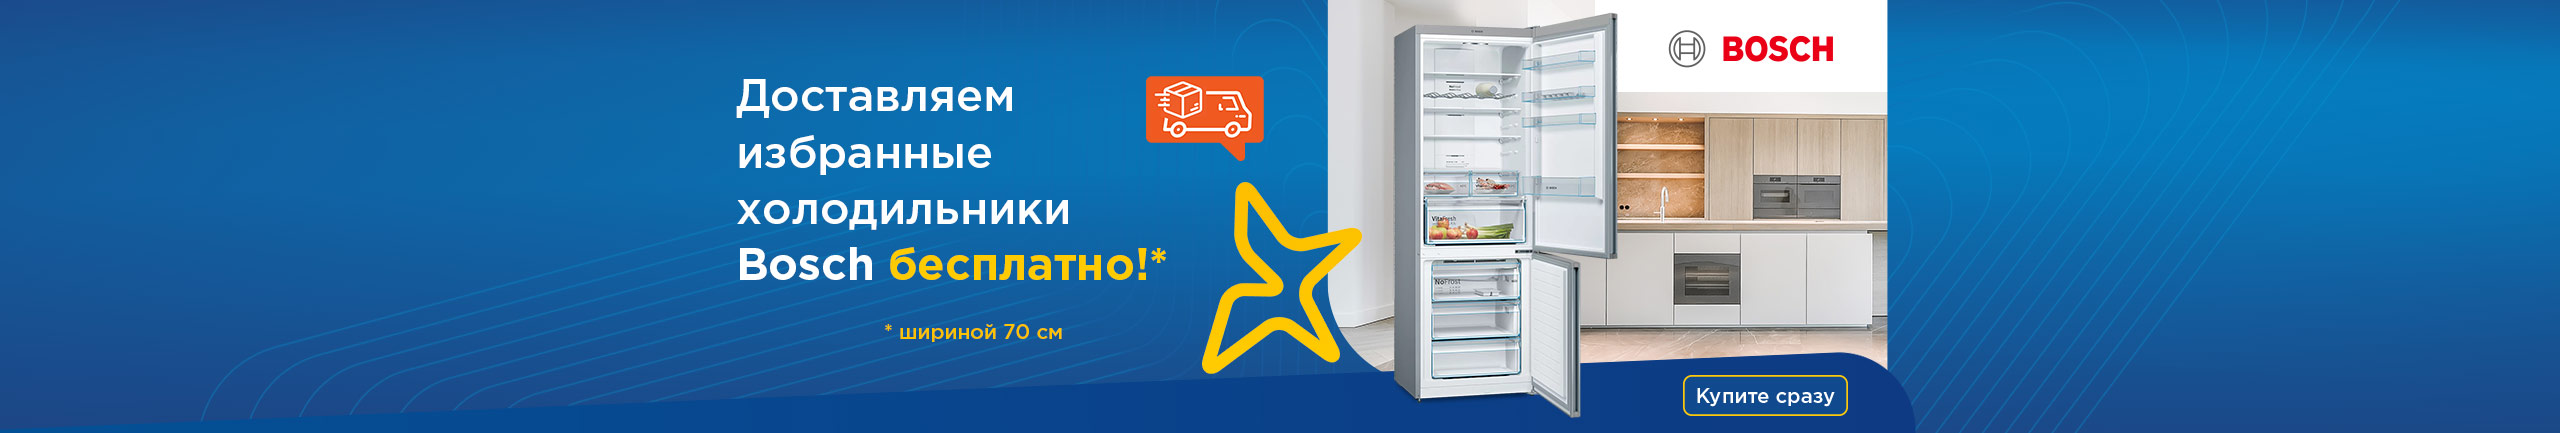 Бесплатная доставка холодильников Bosch!